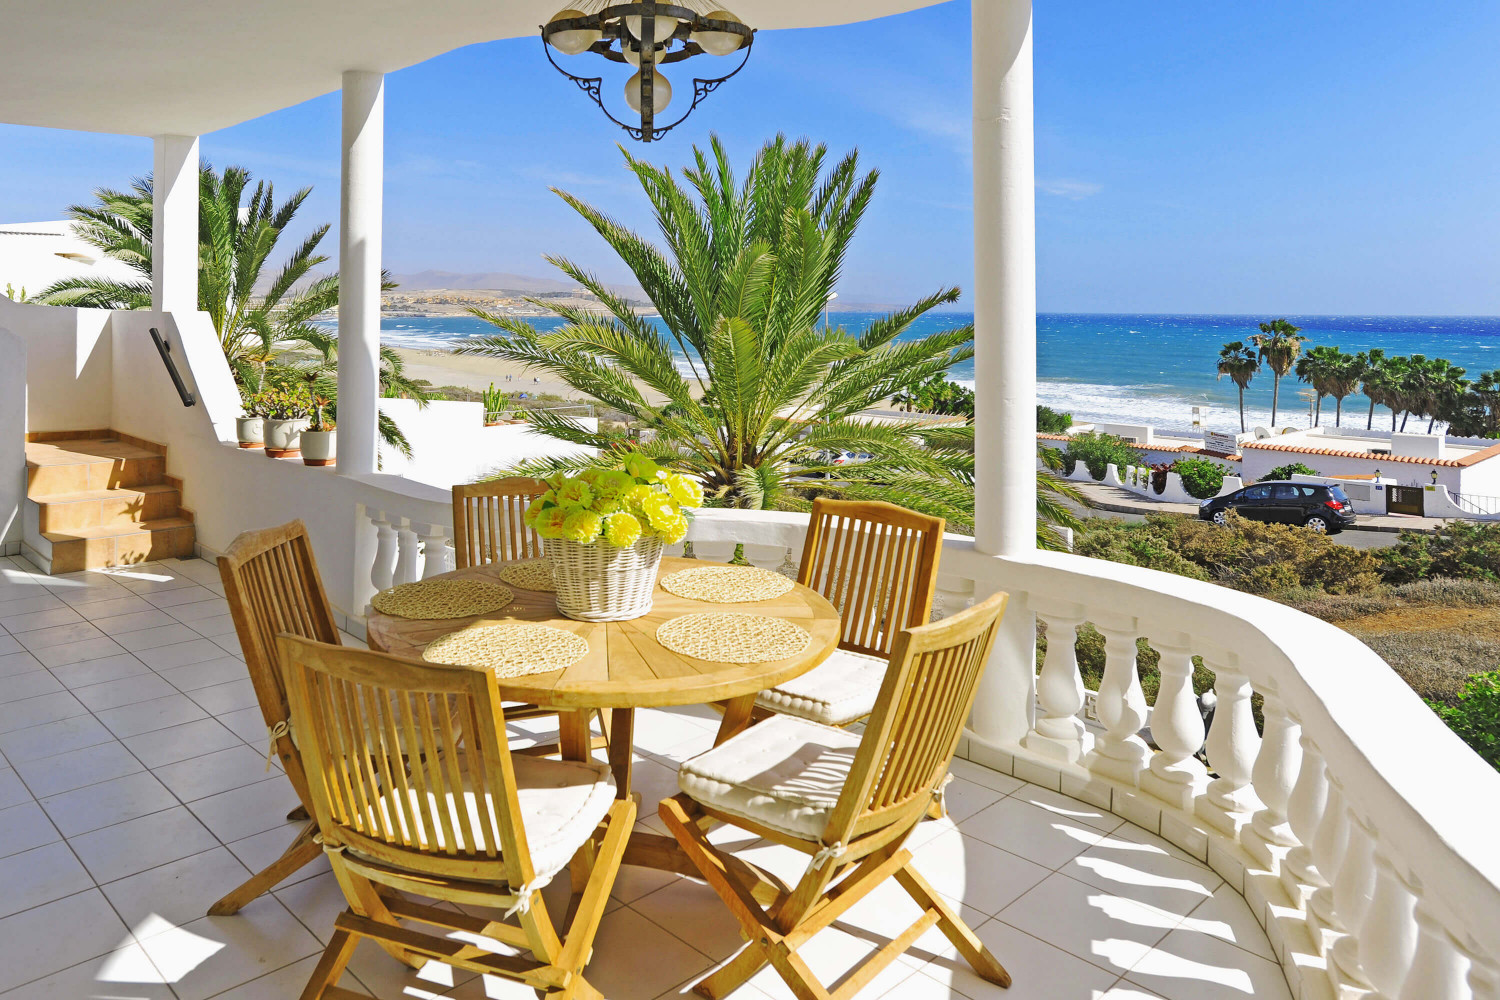 Mooi vakantiehuis aan het strand gelegen in Costa Calma, ingericht in mediterrane stijl, met een onovertroffen uitzicht